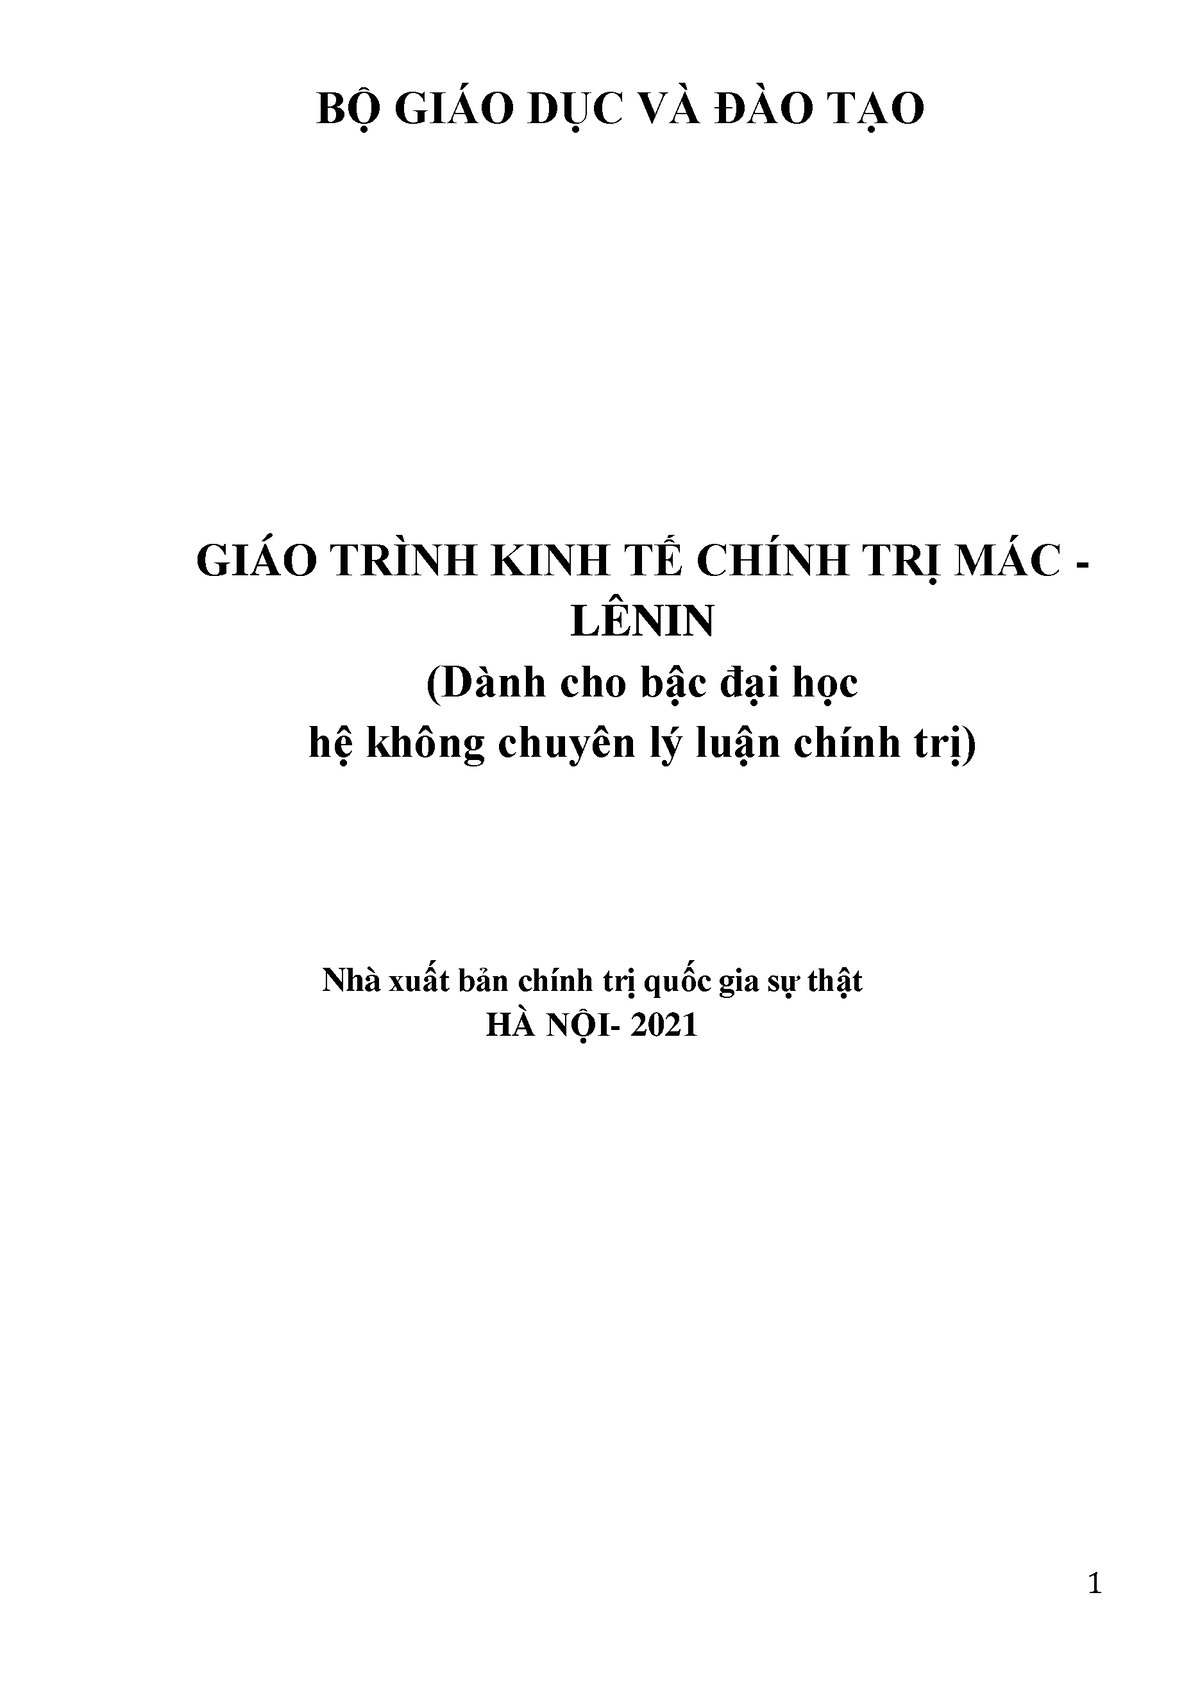 GIAO Trinh KINH TE Chinh TRI MAC - Lenin 2021 - Kinh tế chính trị mác ...